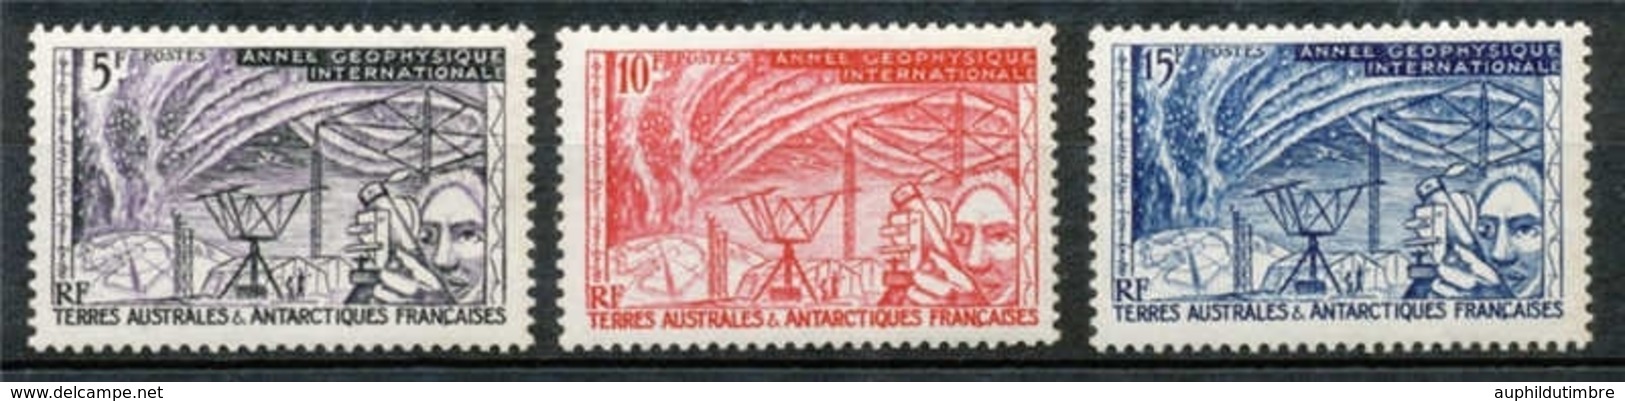 T.A.A.F 1957 N°8 à 10 Série Année Géophysique Internationale N** ZT3A - Unused Stamps